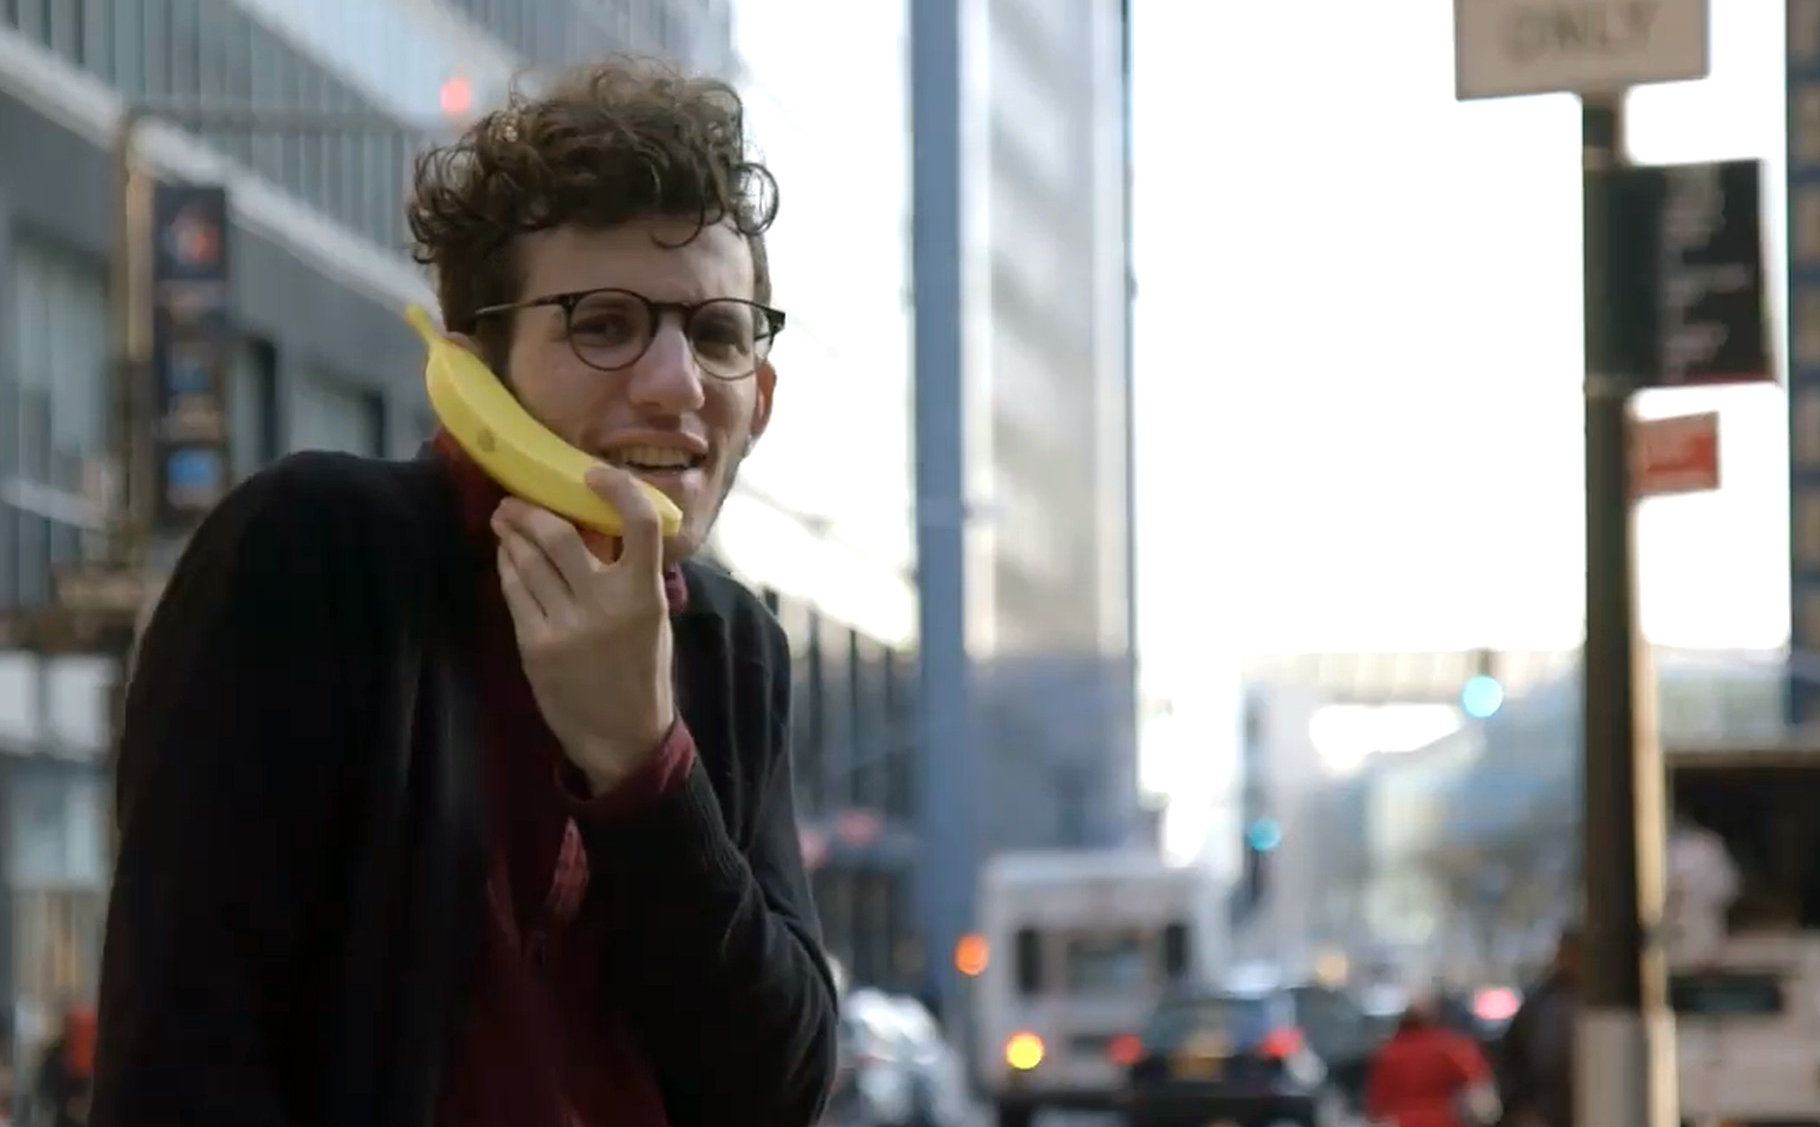 Banana Phone: thiết bị bluetooth nghe nhận cuộc gọi hình quả chuối, chỉ vậy thôi!